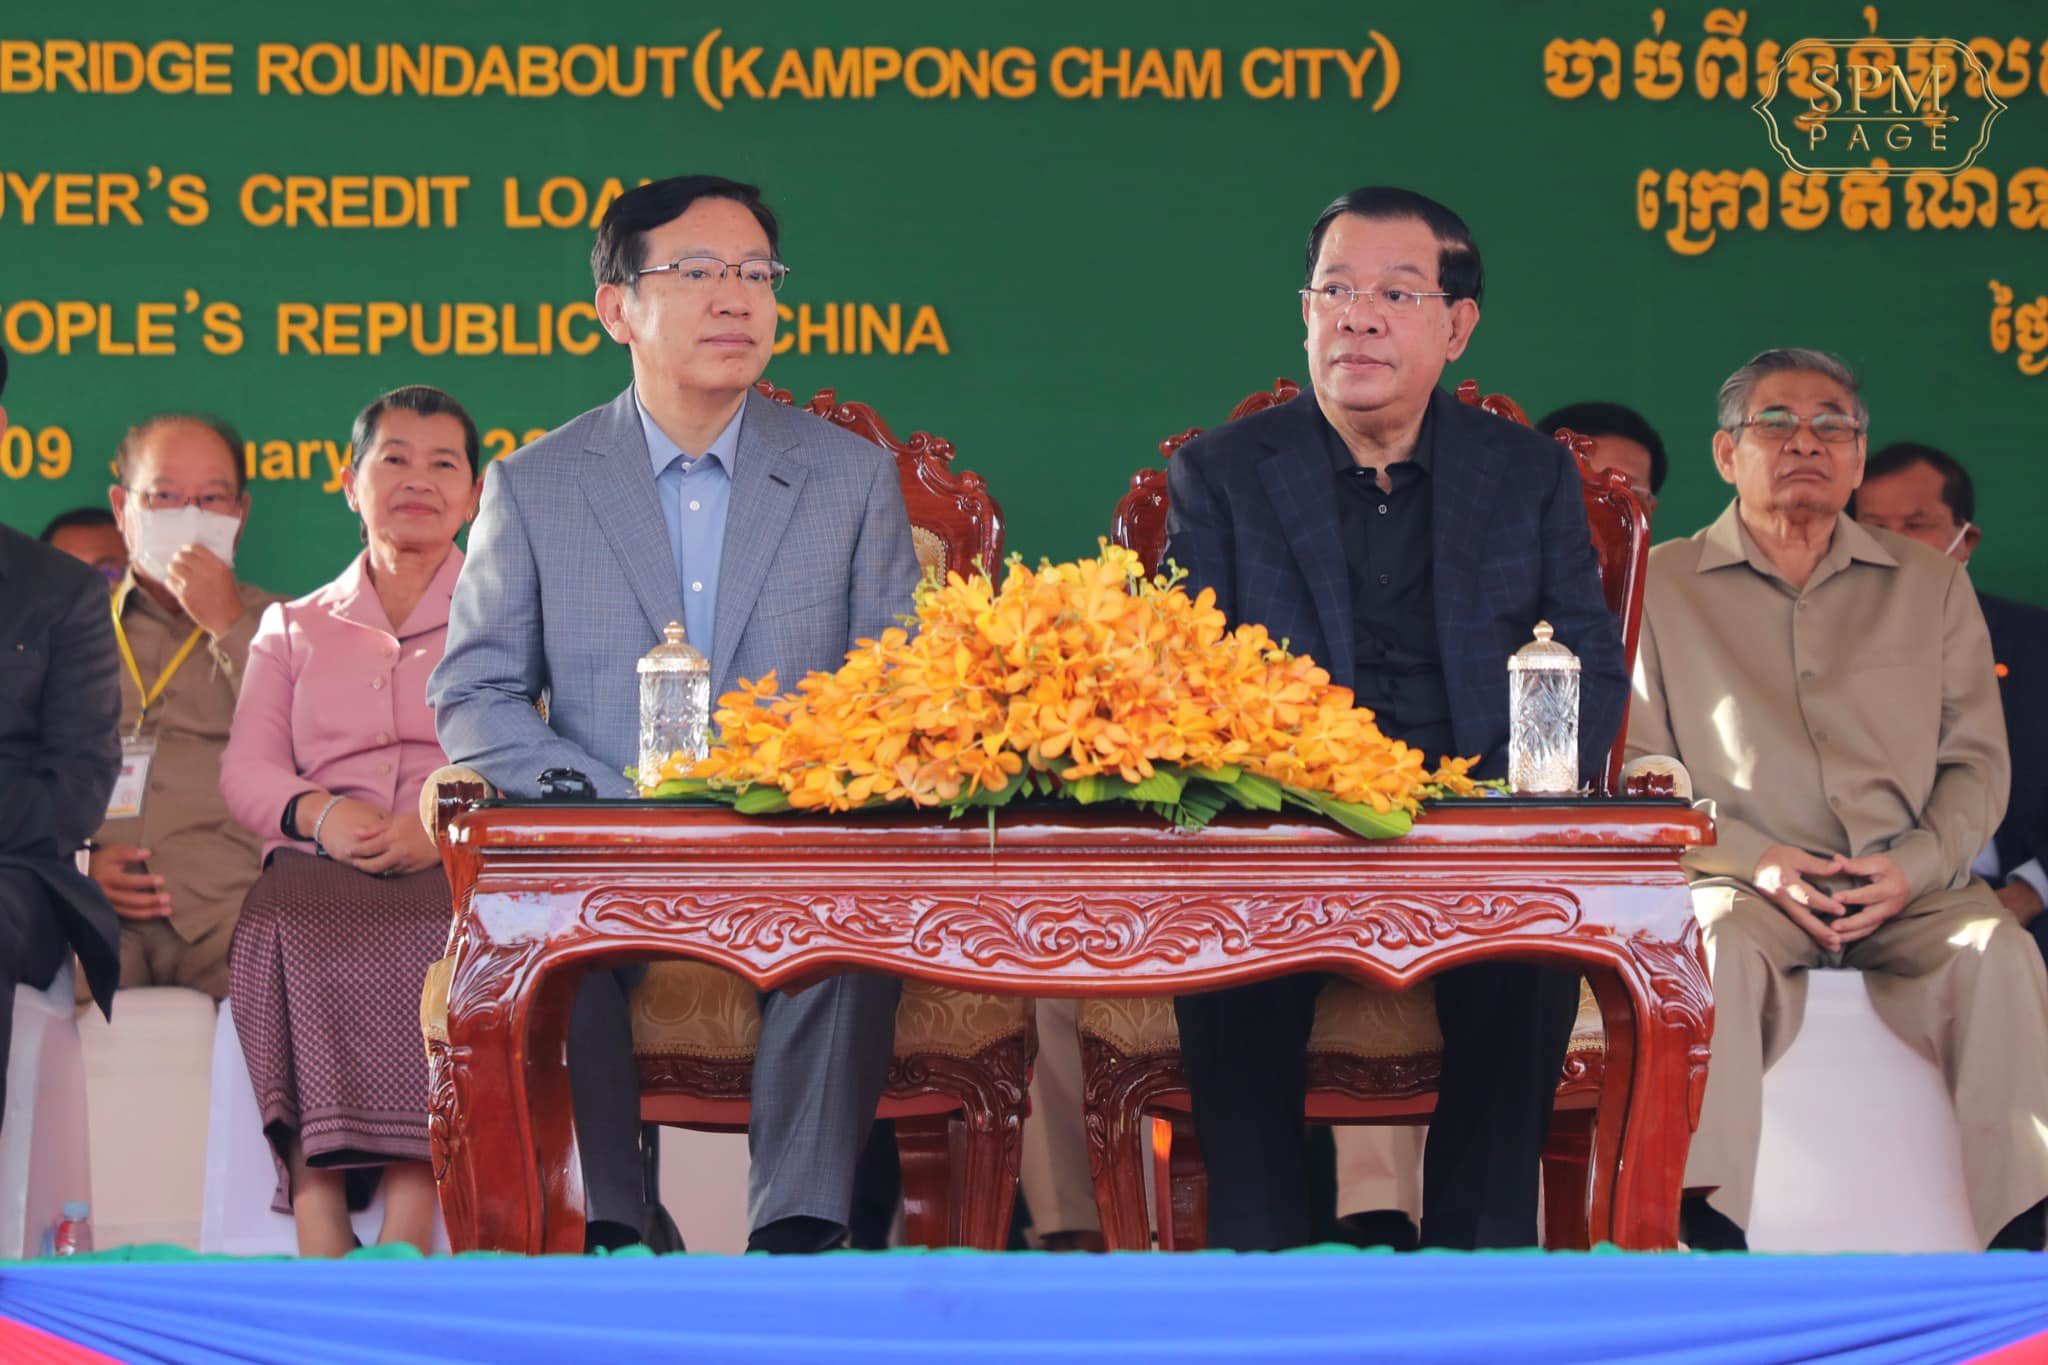 柬埔寨首相洪森抵达北京访问 王毅赴机场迎接 - 中国日报网